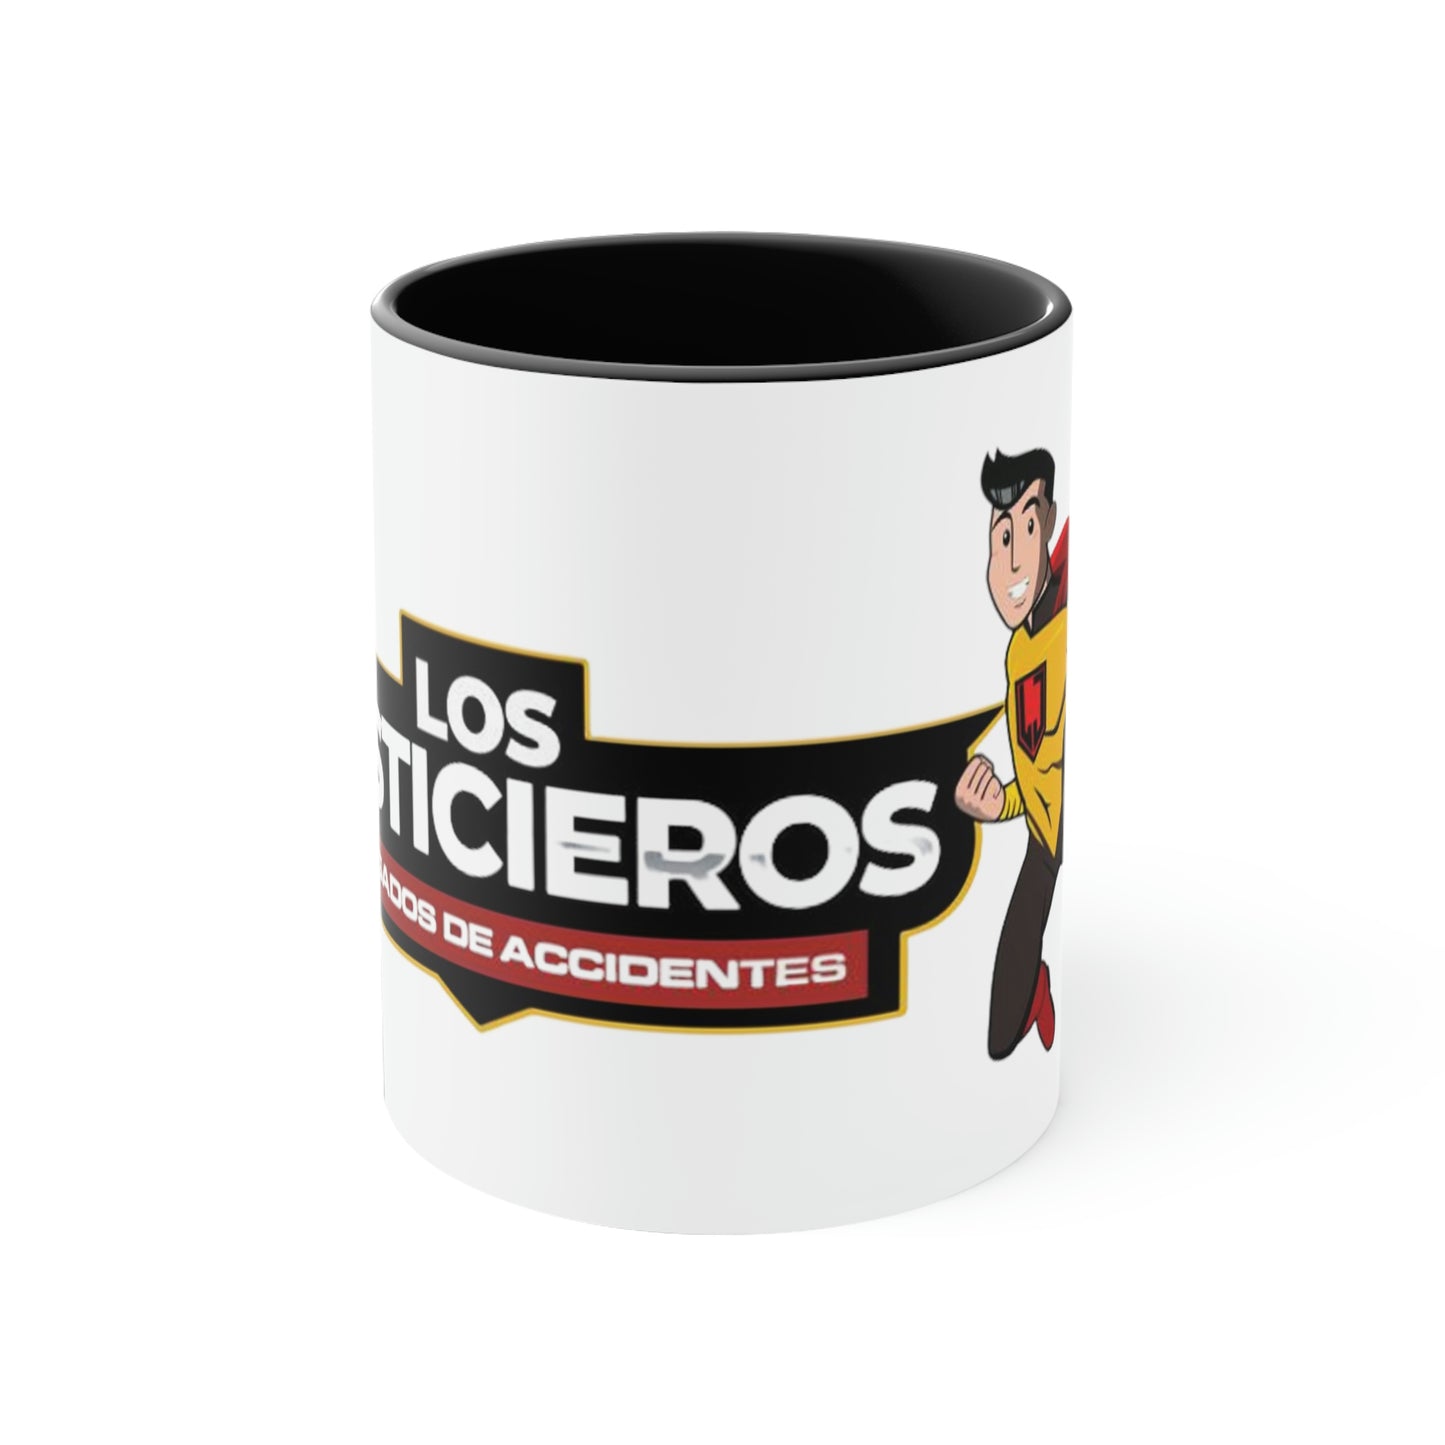 Los Justicieros Accent Coffee Mug, 11oz